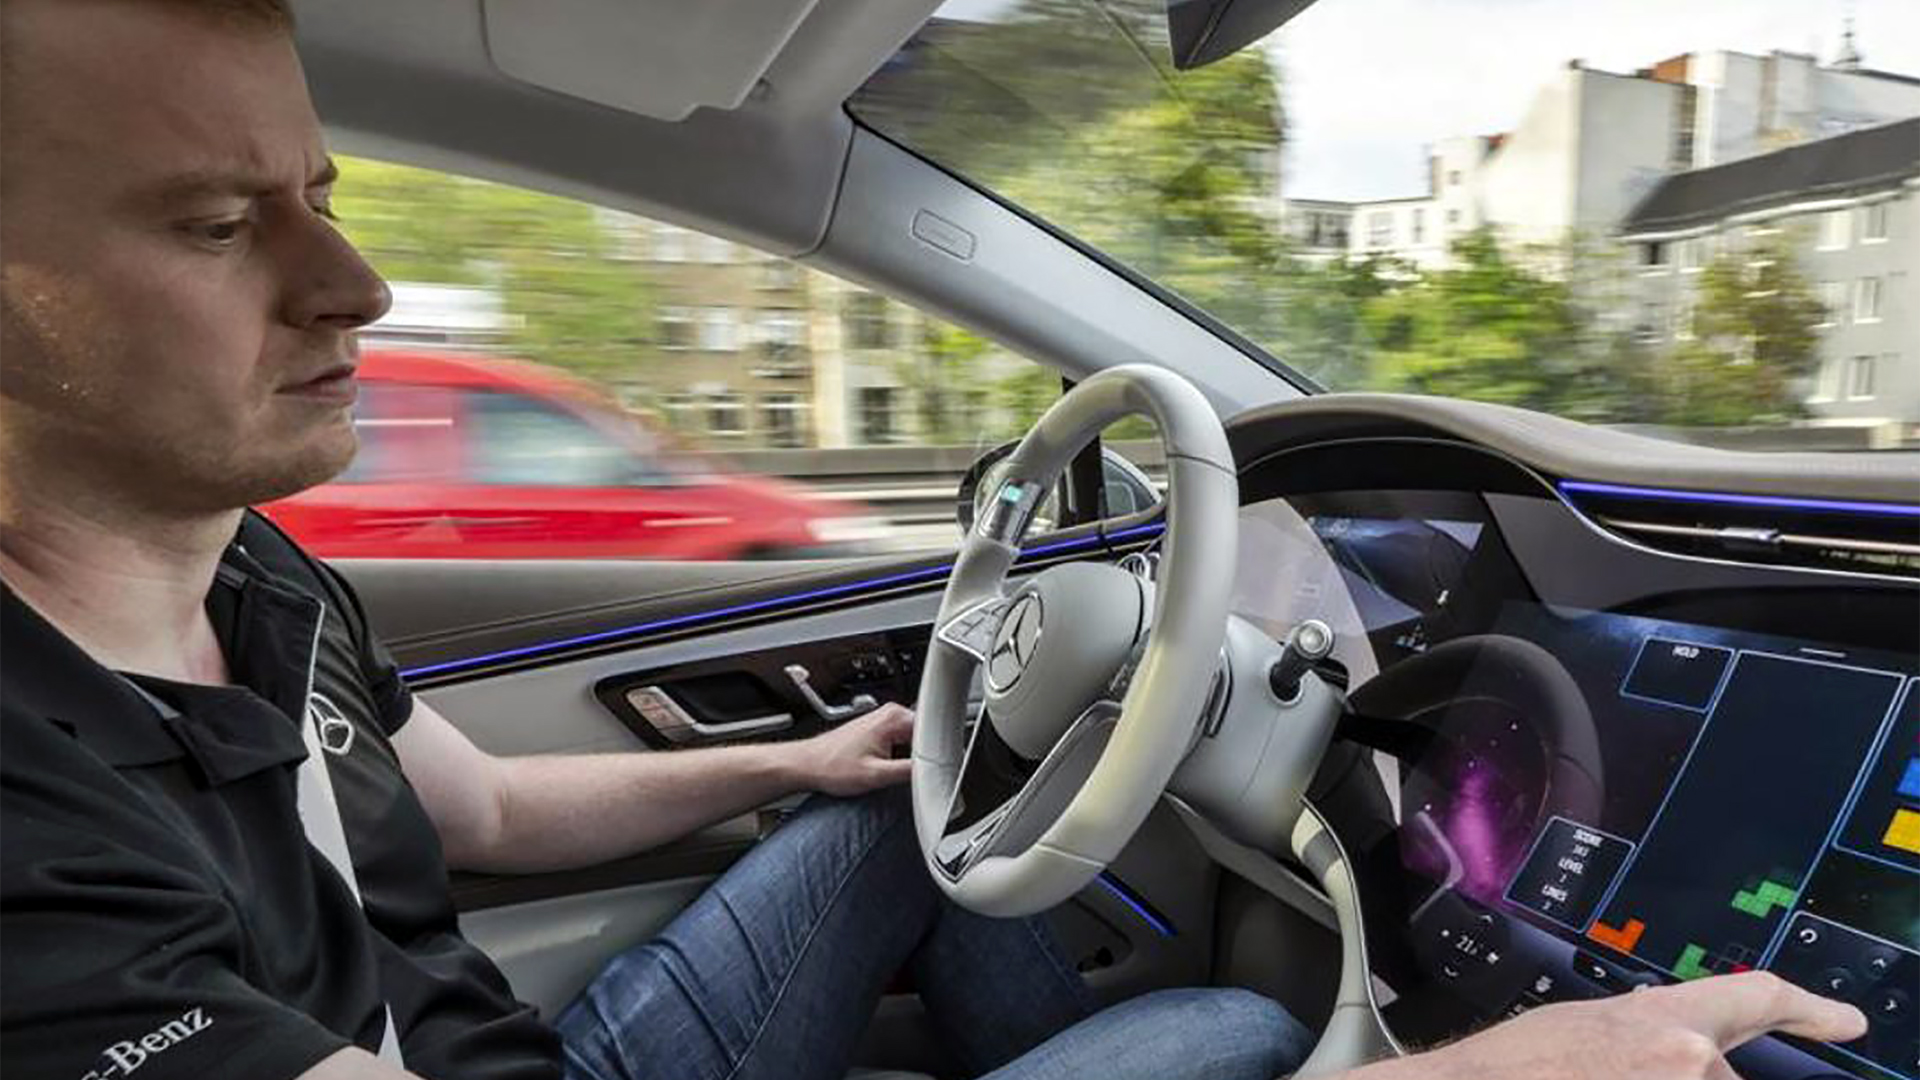 Con el Nivel 3 de conducción autónoma, el conductor físico puede delegar el manejo en el auto y dedicarse a otras ocupaciones o entretenimientos